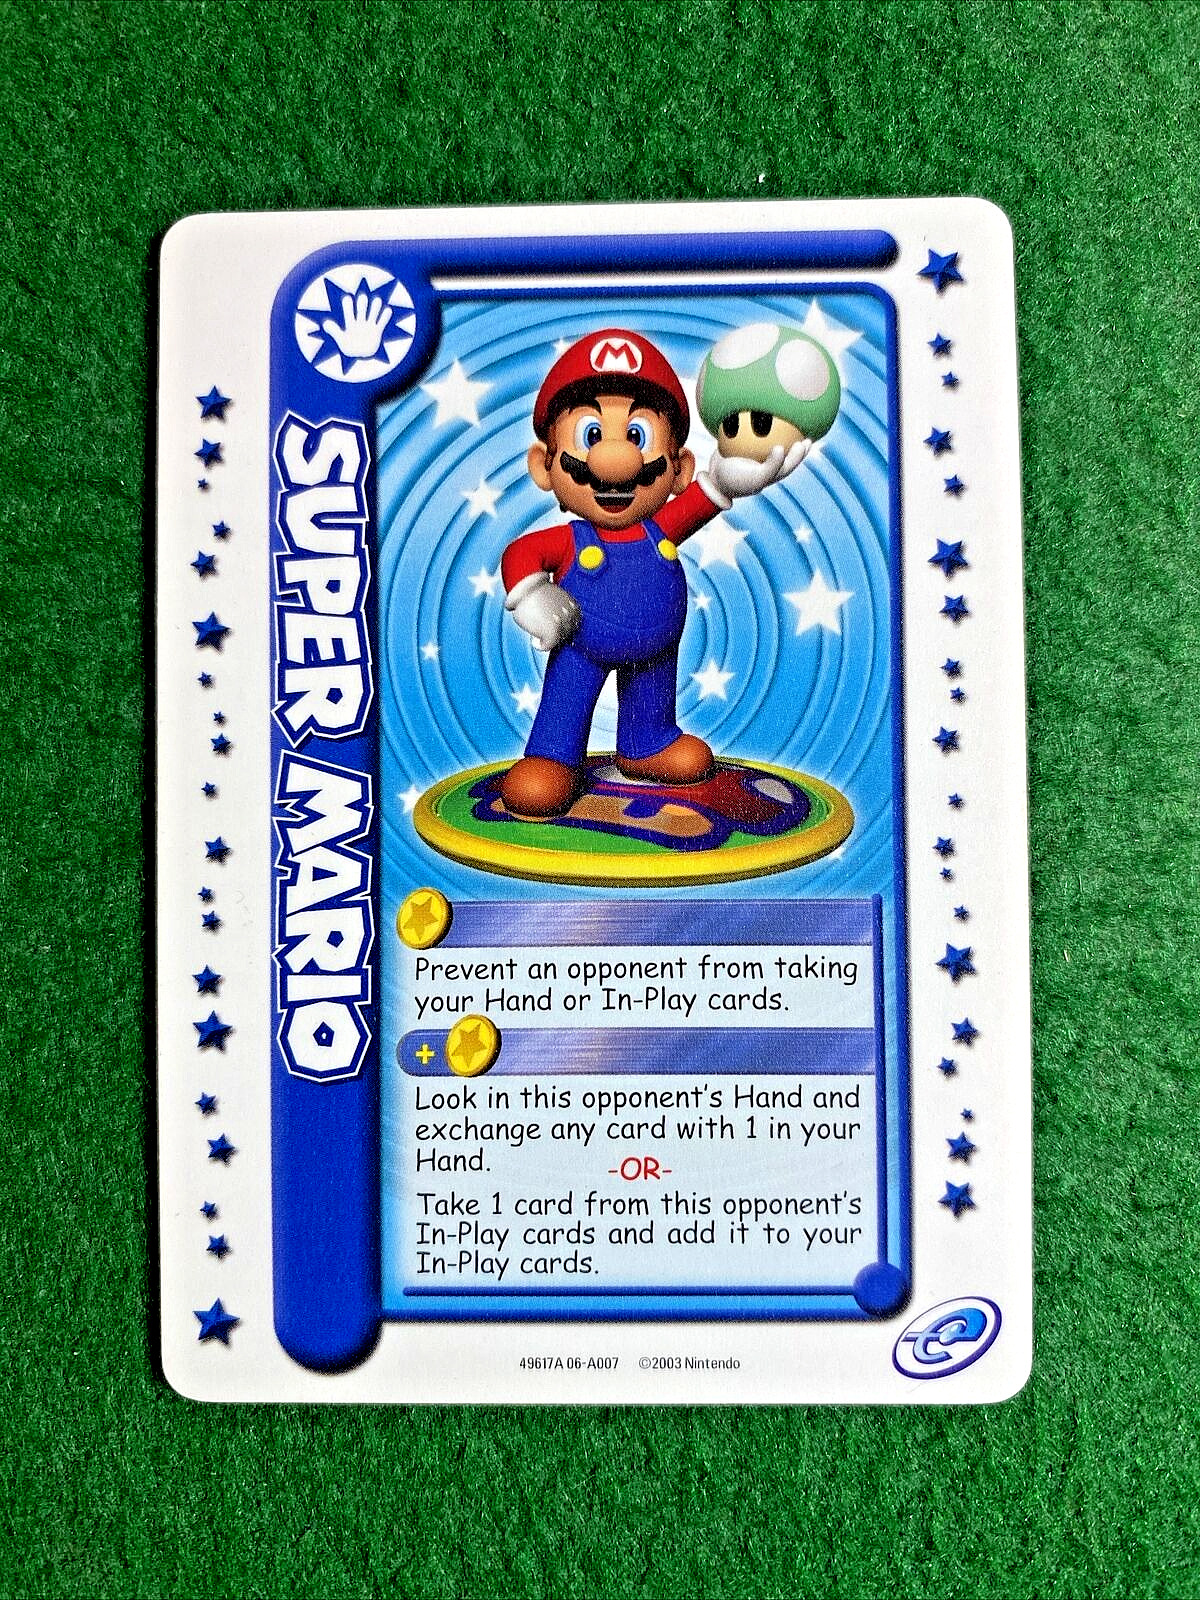 🐬🐬 2003 Nintendo Mario Party Super Mario Card 🐬🐬